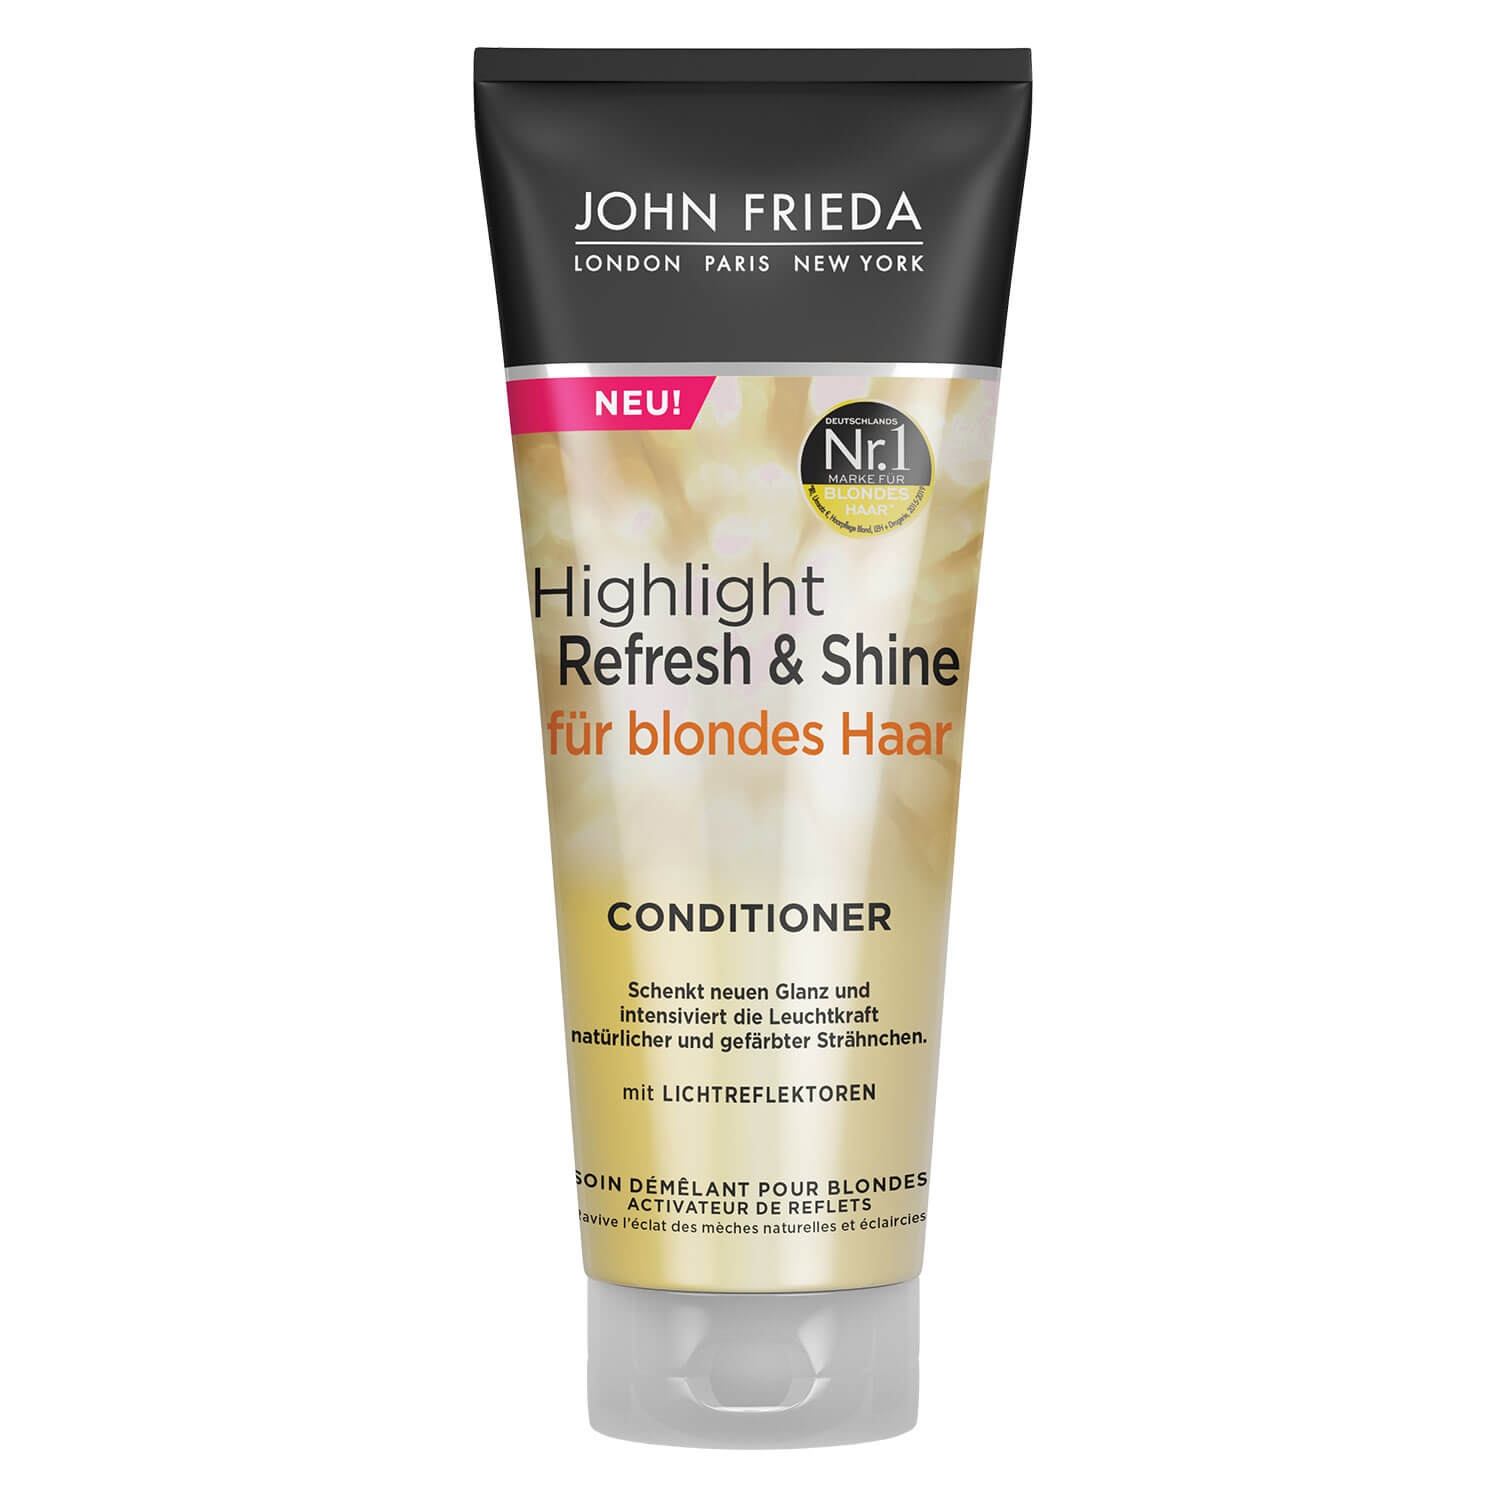 Produktbild von Sheer Blonde - Highlight Refresh & Shine Conditioner